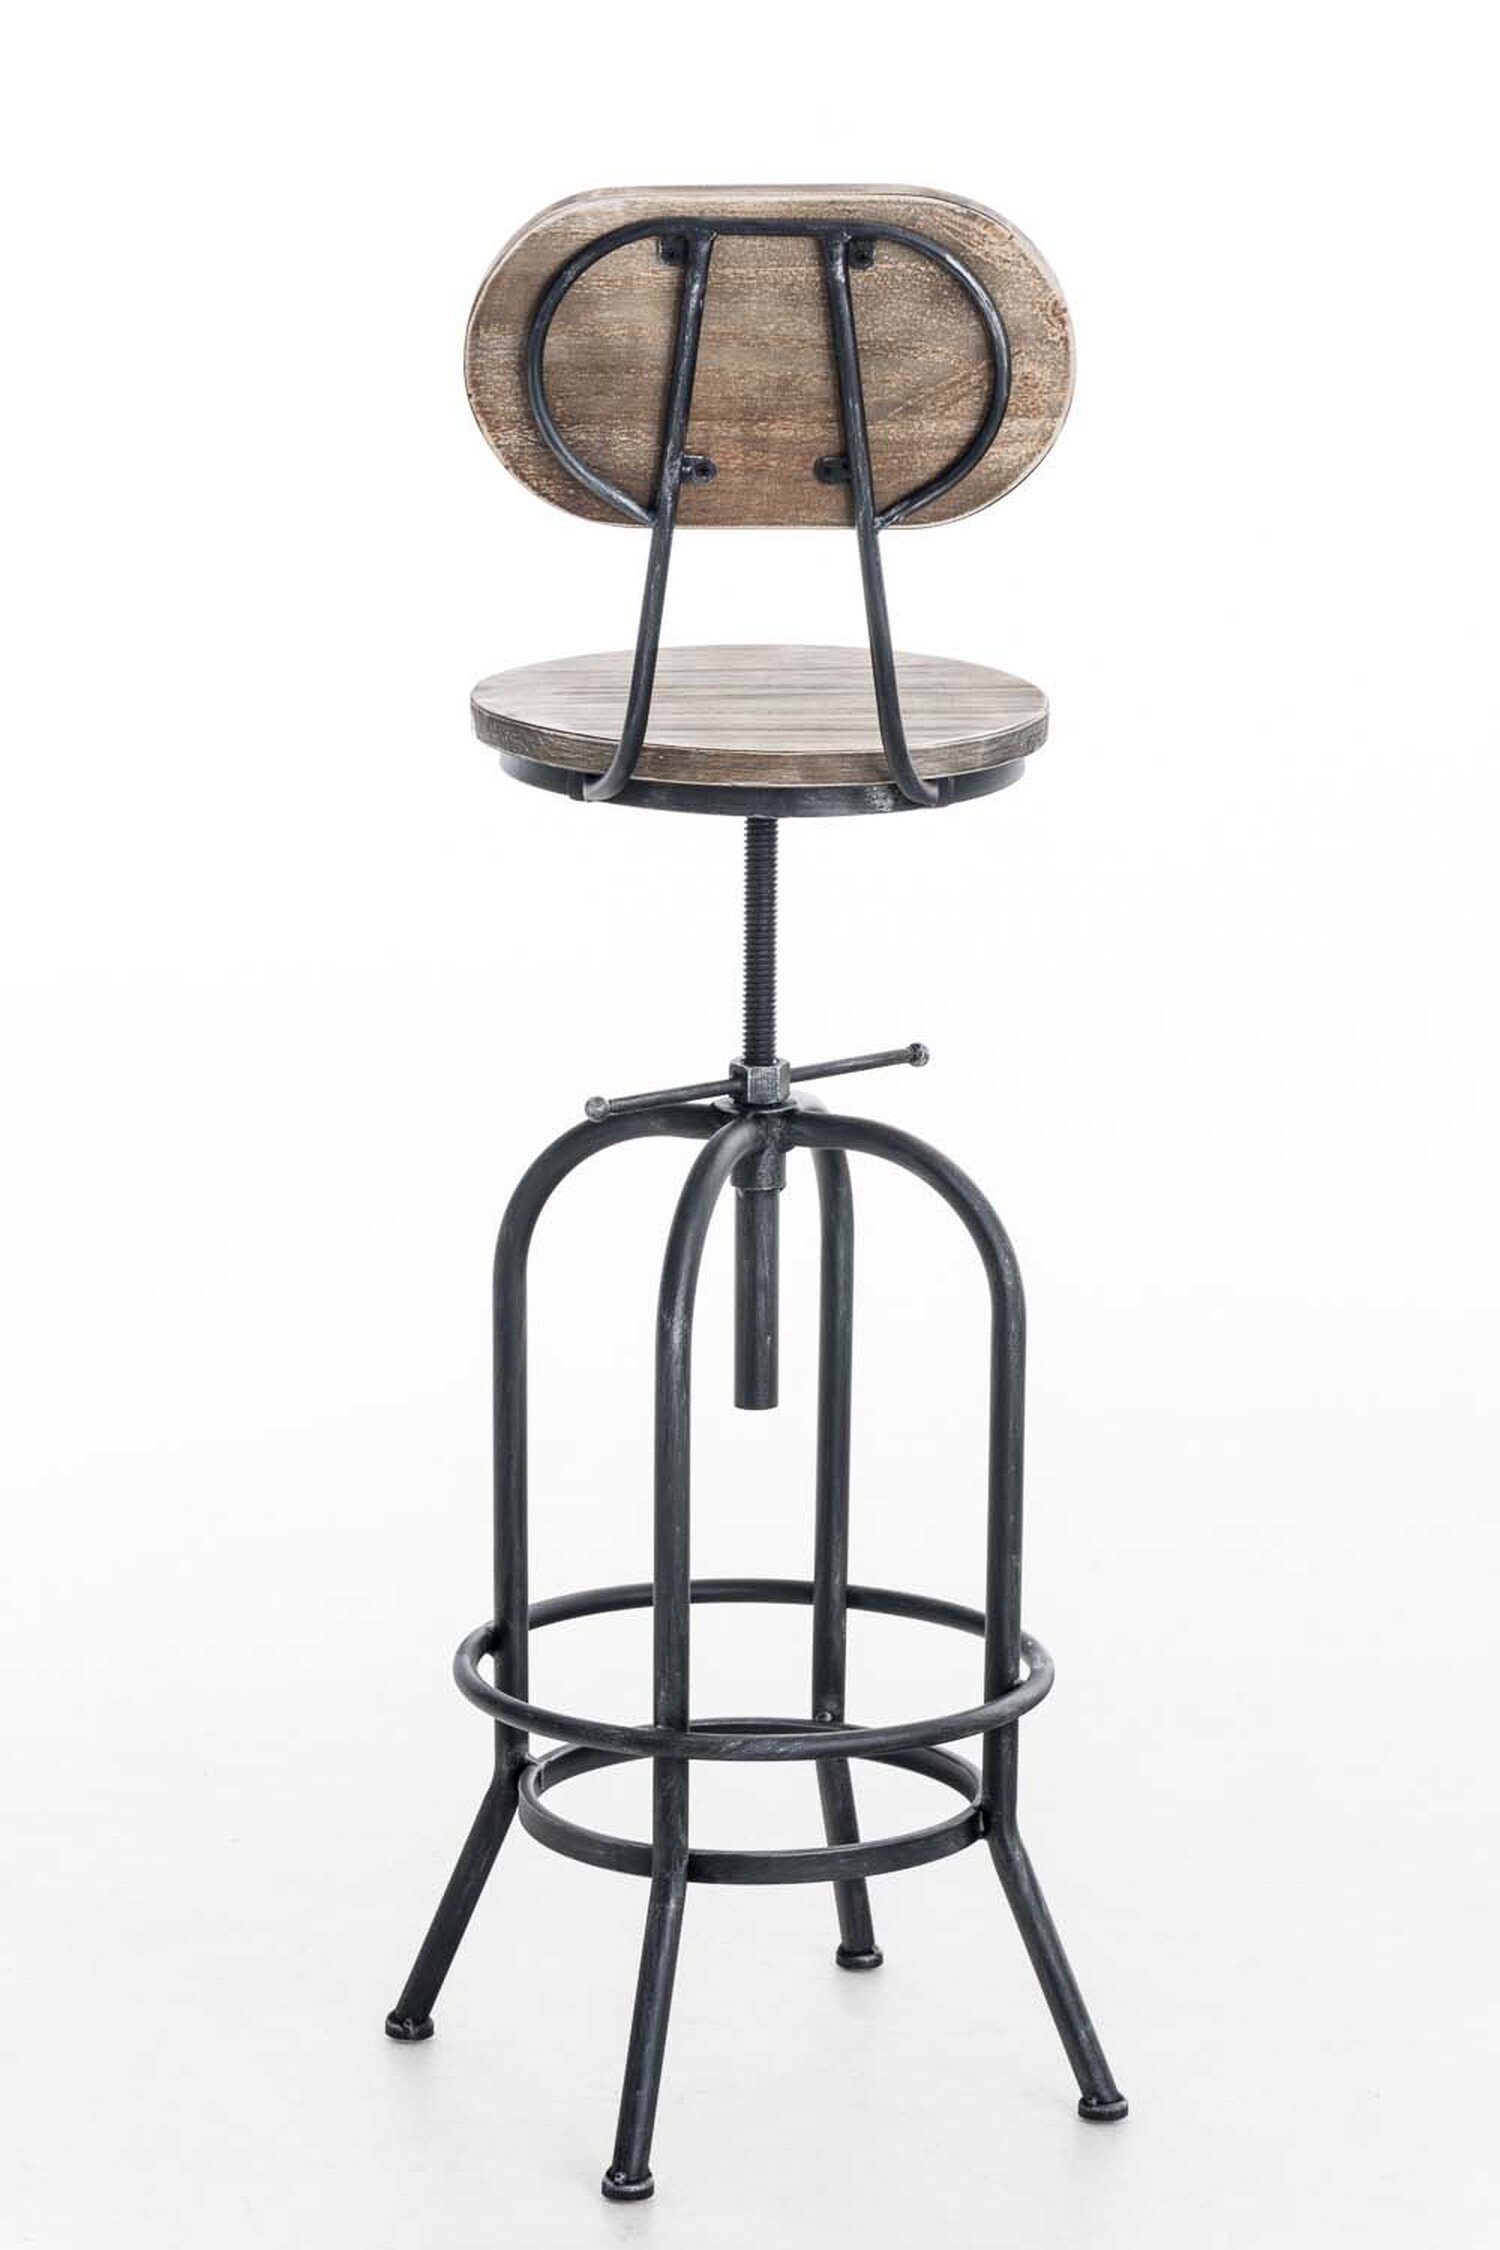 TPFLiving Barhocker Holz Sitzfläche: Fußstütze - antik (mit - - - Pino Metall & silberfarbenes Gestell: für Küche), Theke drehbar Hocker höhenverstellbar 360°